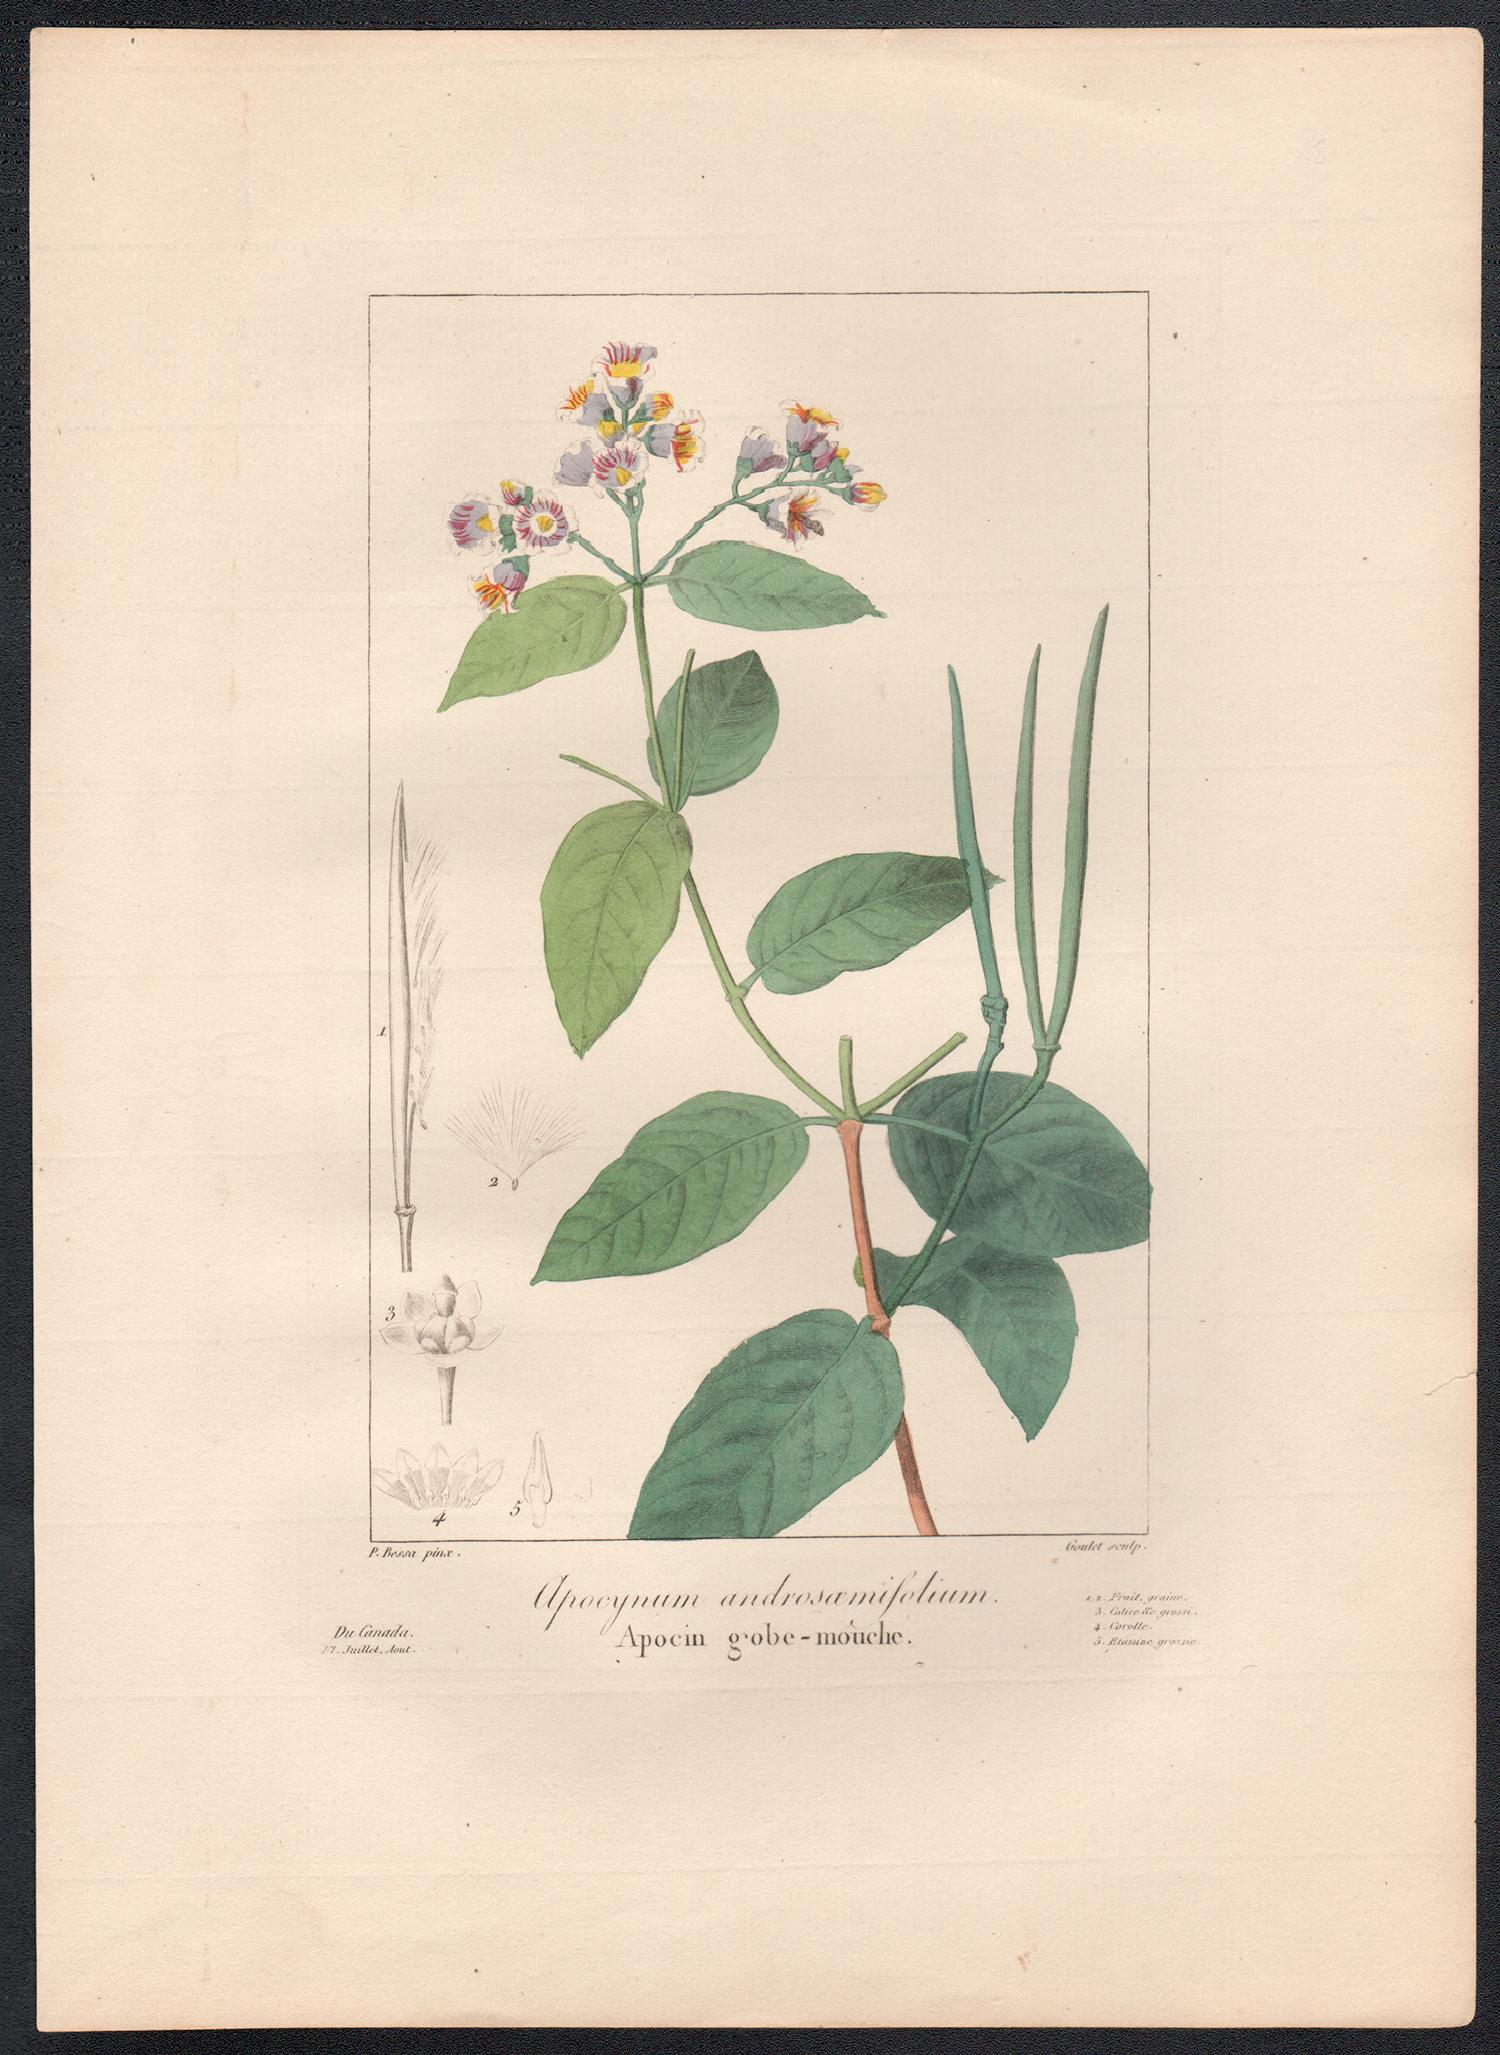 Apocynum androsamifolium - gravure de fleurs botaniques françaises par Bessa, vers 1830 - Print de After Pancrace Bessa